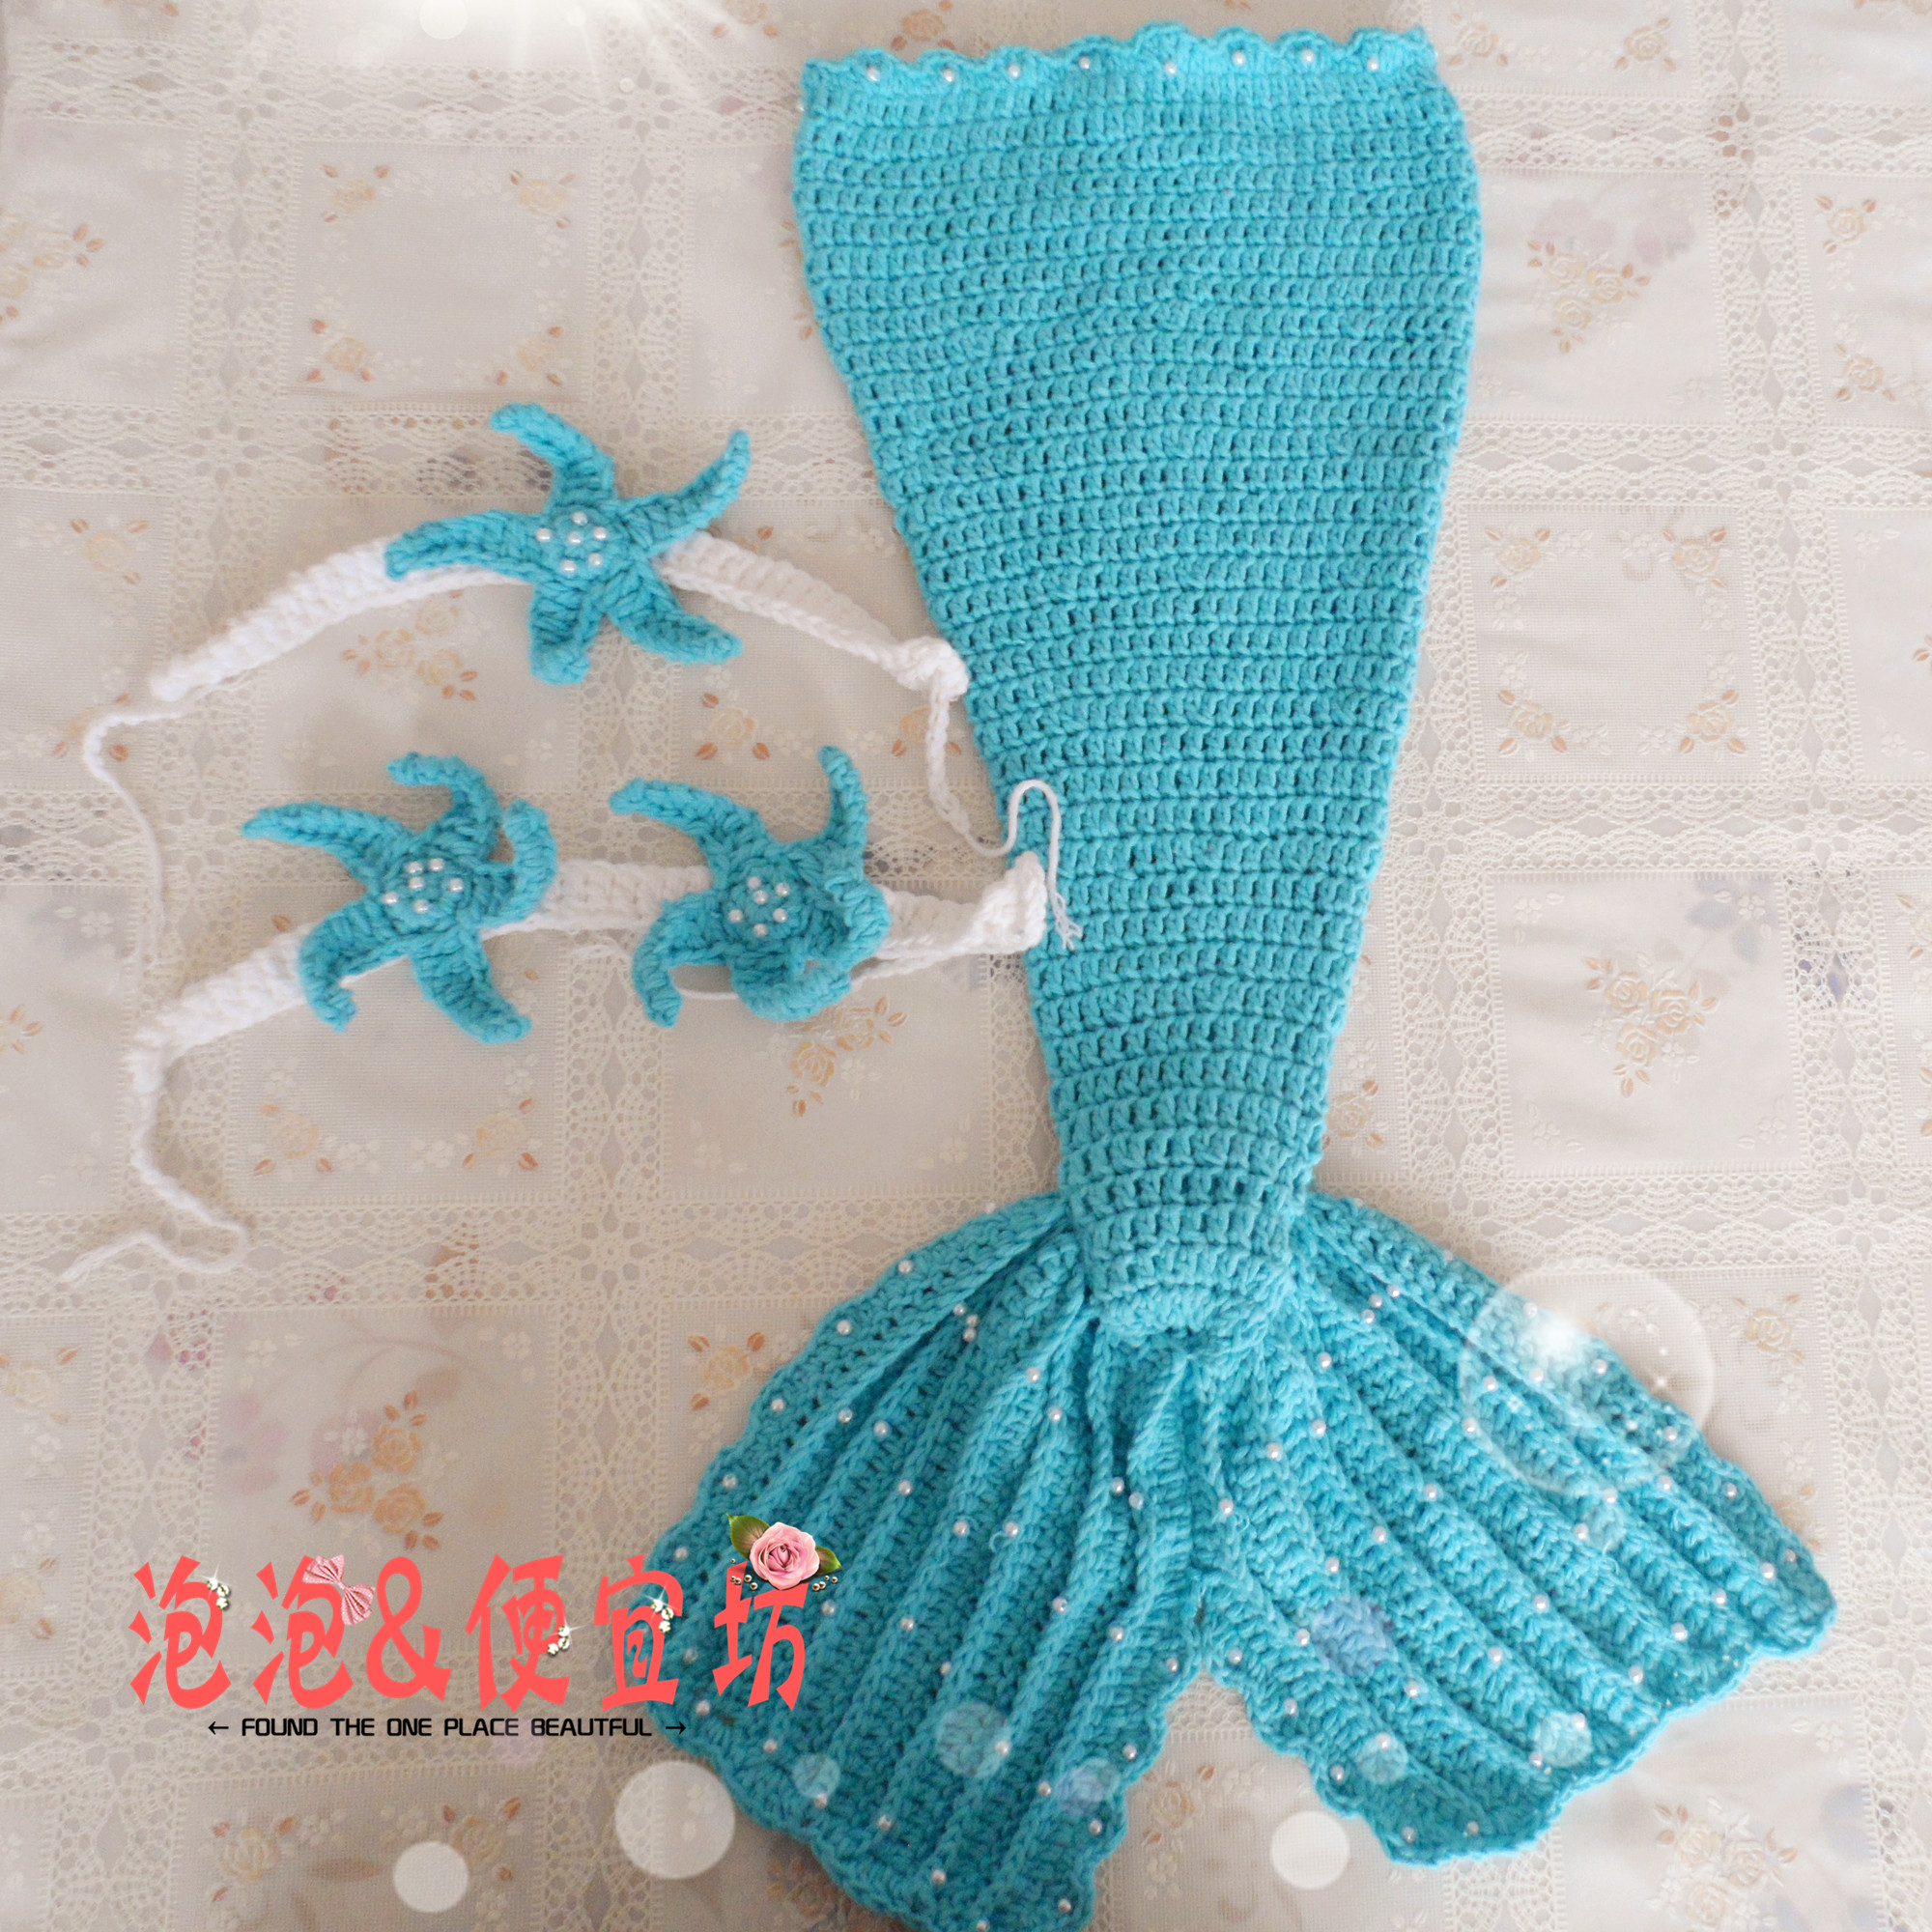 Mermaid Crochet Pattern For Baby Crochet Little Mermaid Tails For Little Girls Make Handmade